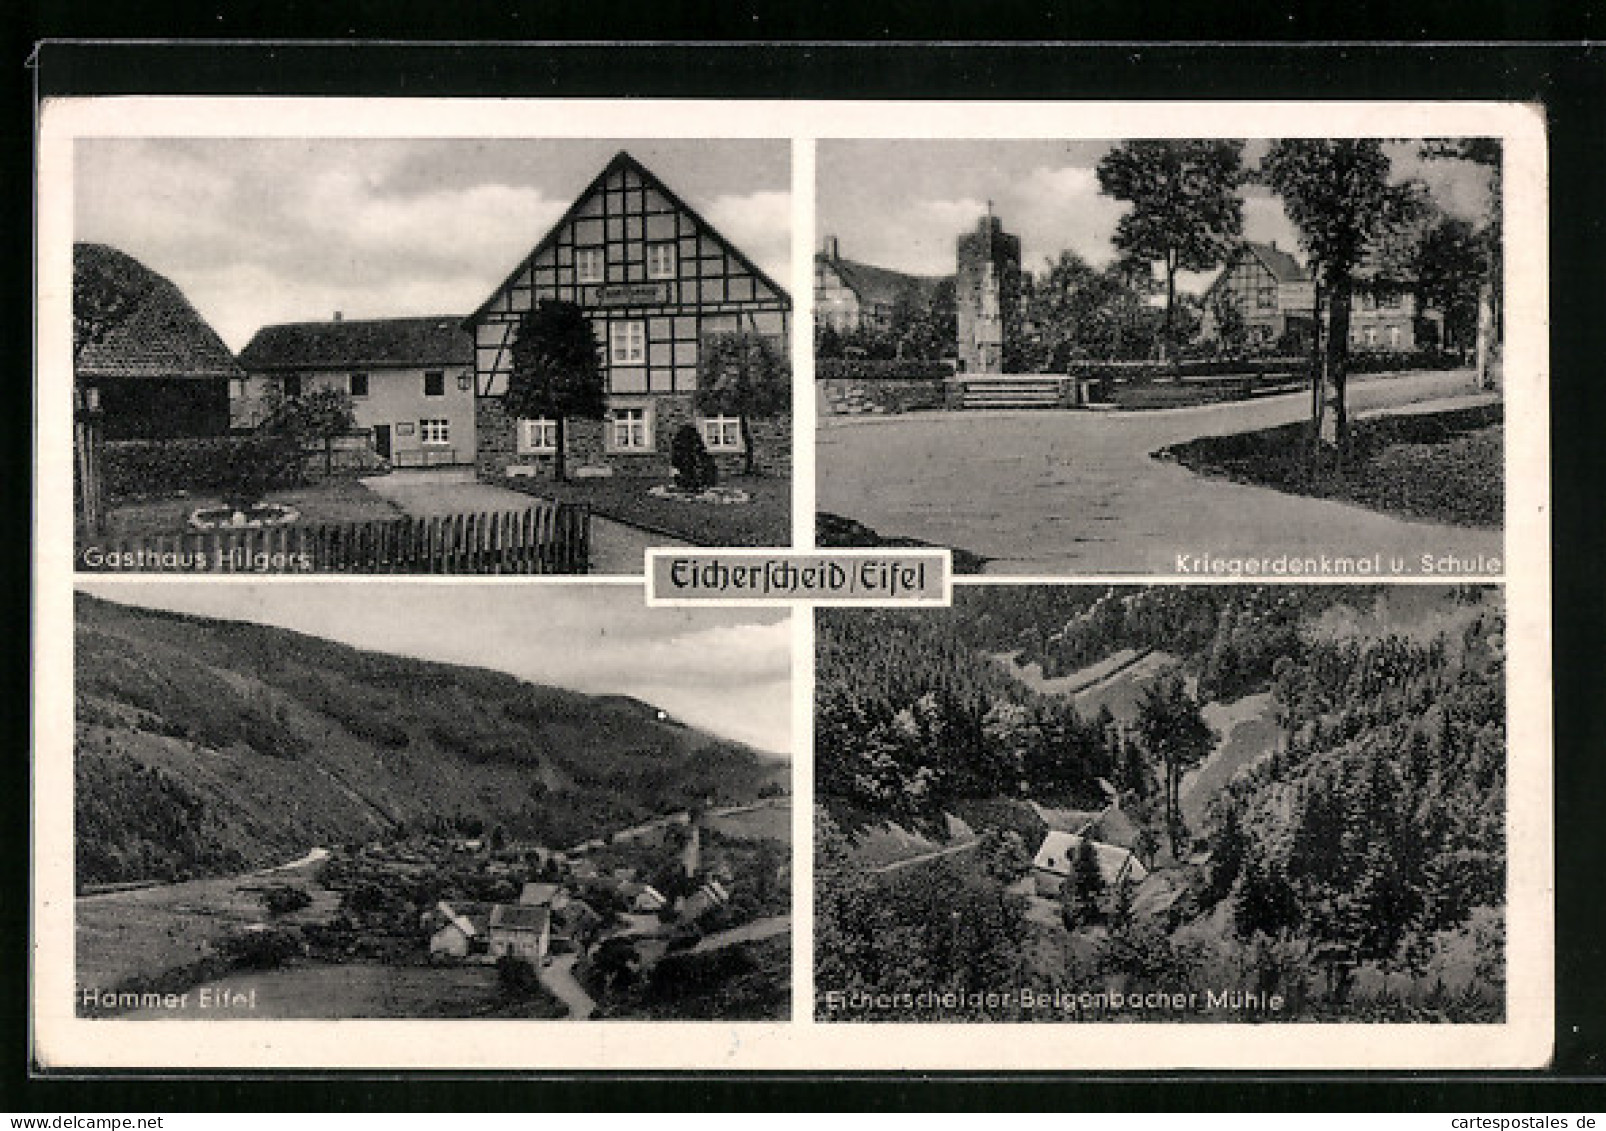 AK Eicherscheid / Eifel, Gasthaus Hilgers, Kriegerdenkmal M. Schule, Hammer Eifel, Mühle  - Hamm